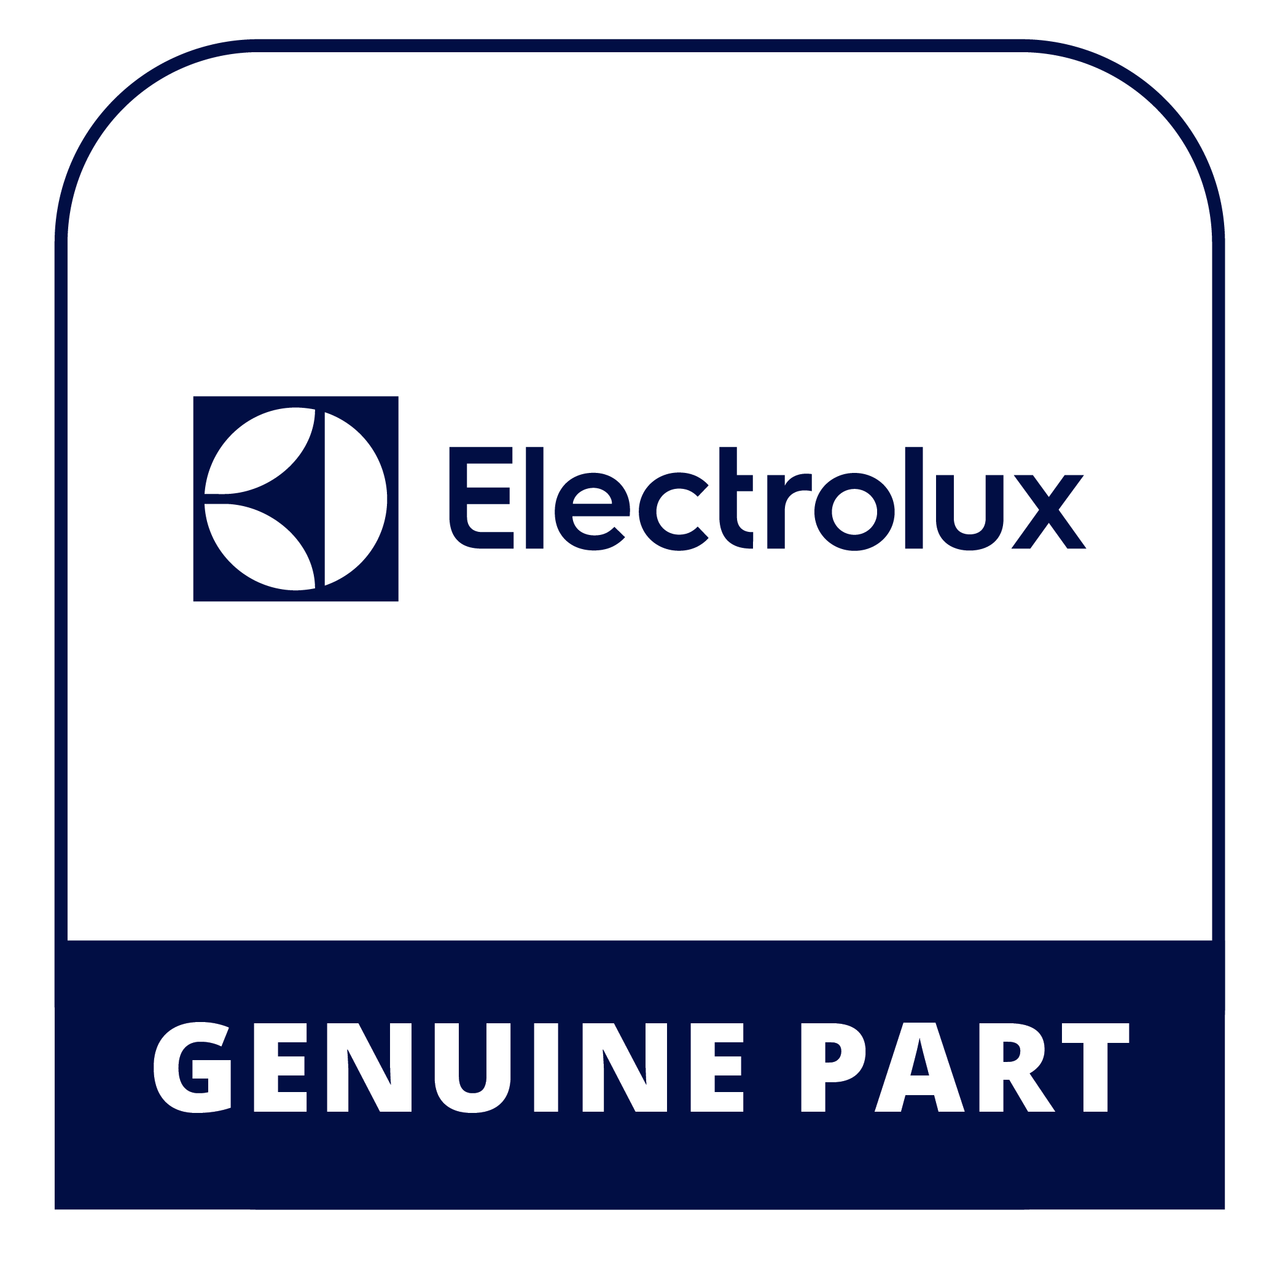 Frigidaire - Electrolux 5304492753 220V Icemaker Kit - Genuine Electrolux Part